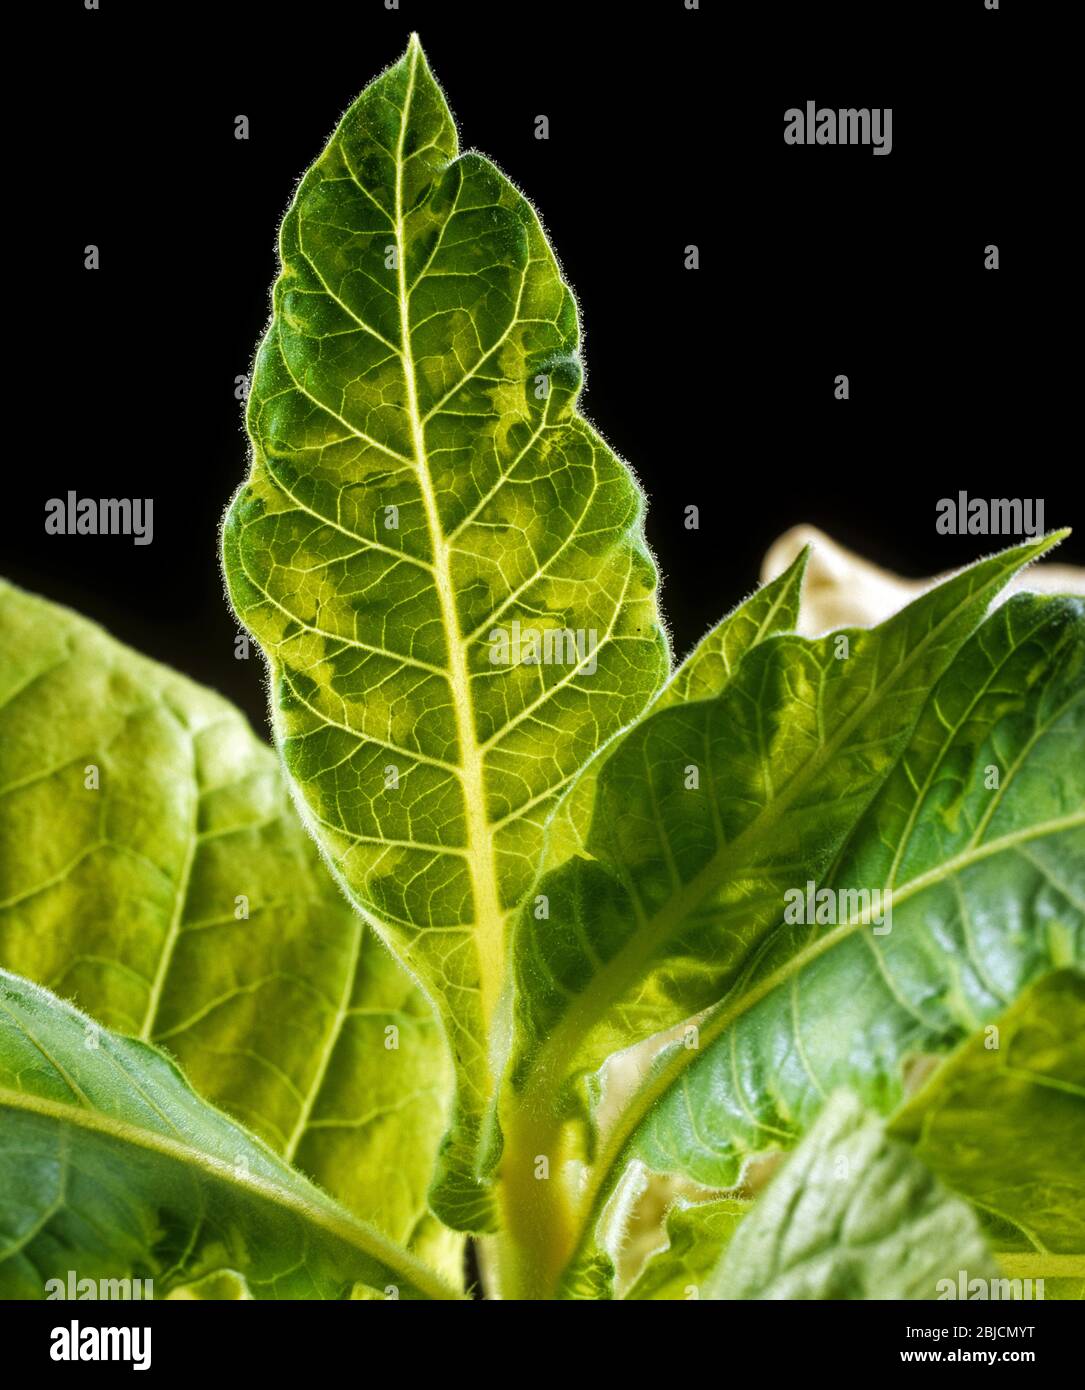 Tabak Mosaik Virus ( TMV ) Symptome von Inseln der Chlorose mit Hinterleuchtung eines infizierten Tabakblatt gesehen, Stockfoto